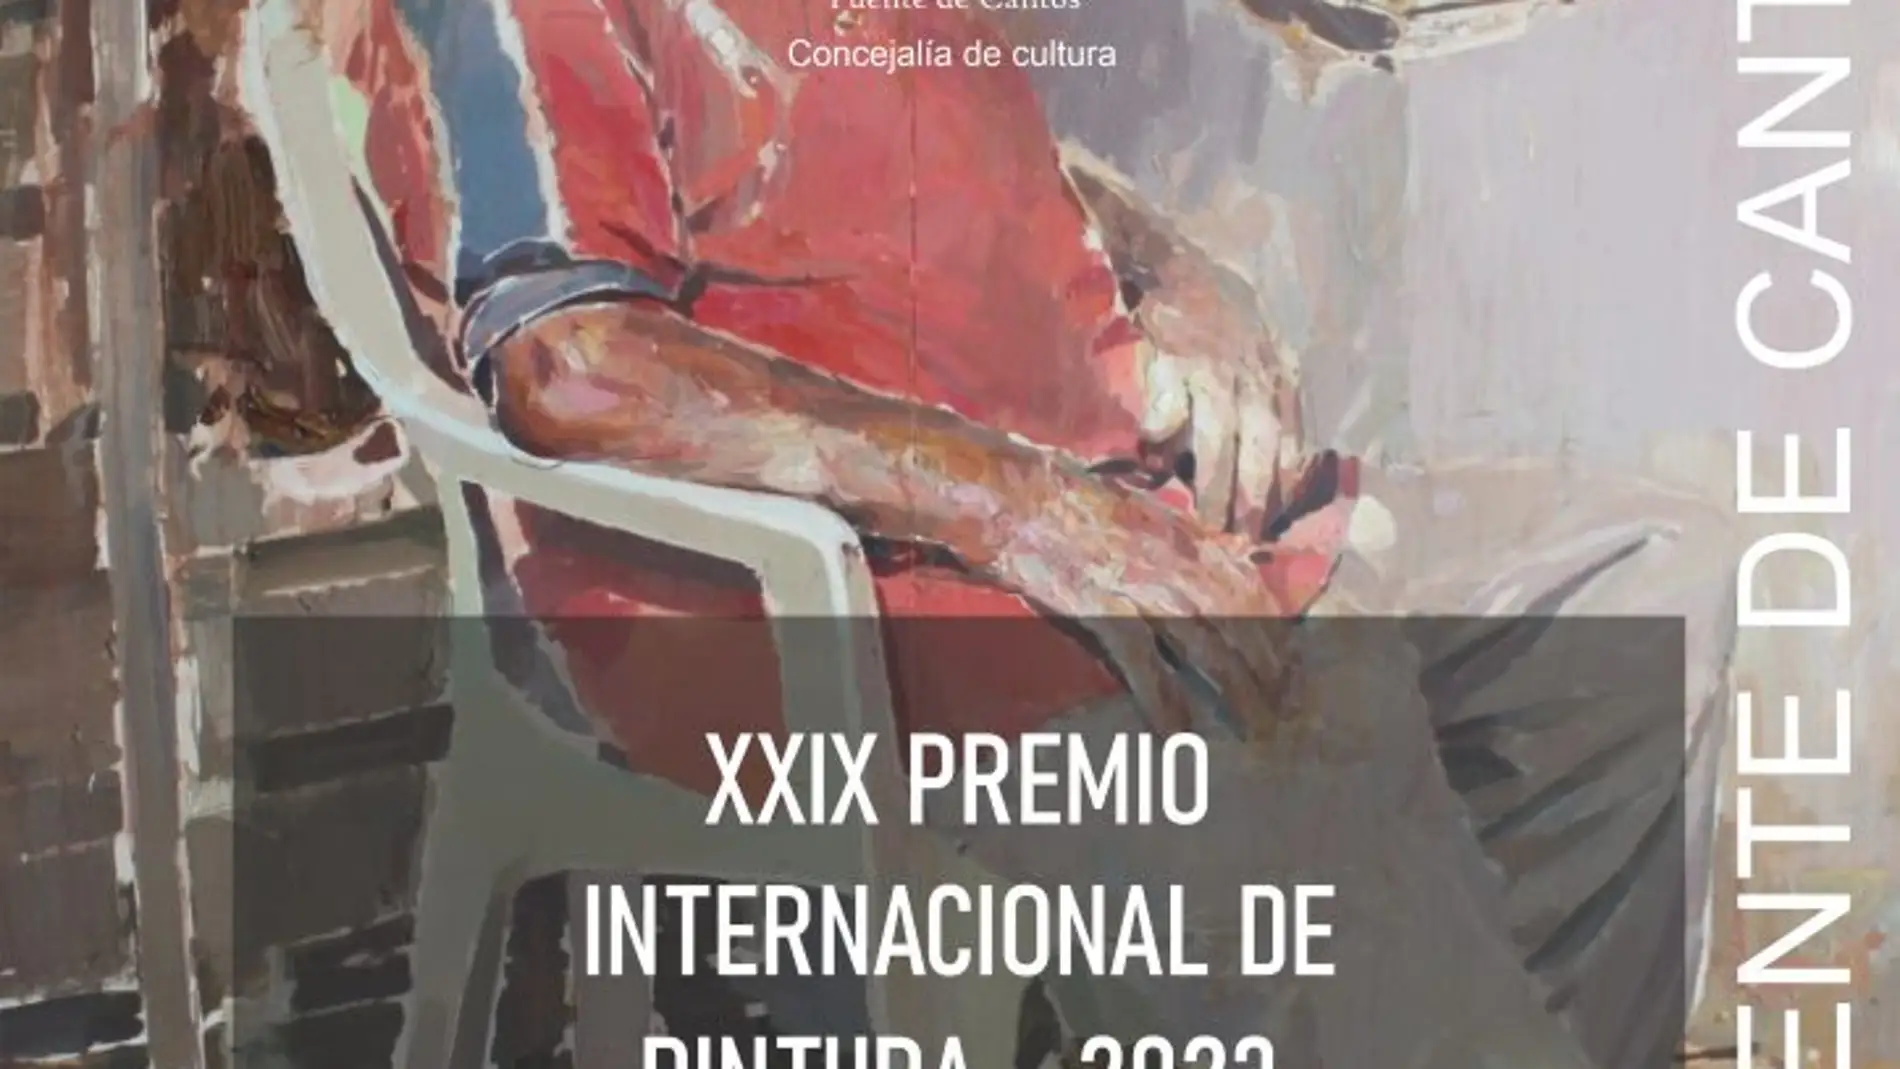 El Ayuntamiento de Fuente de Cantos convoca el XXIX Premio internacional de Pintura Francisco de Zurbarán